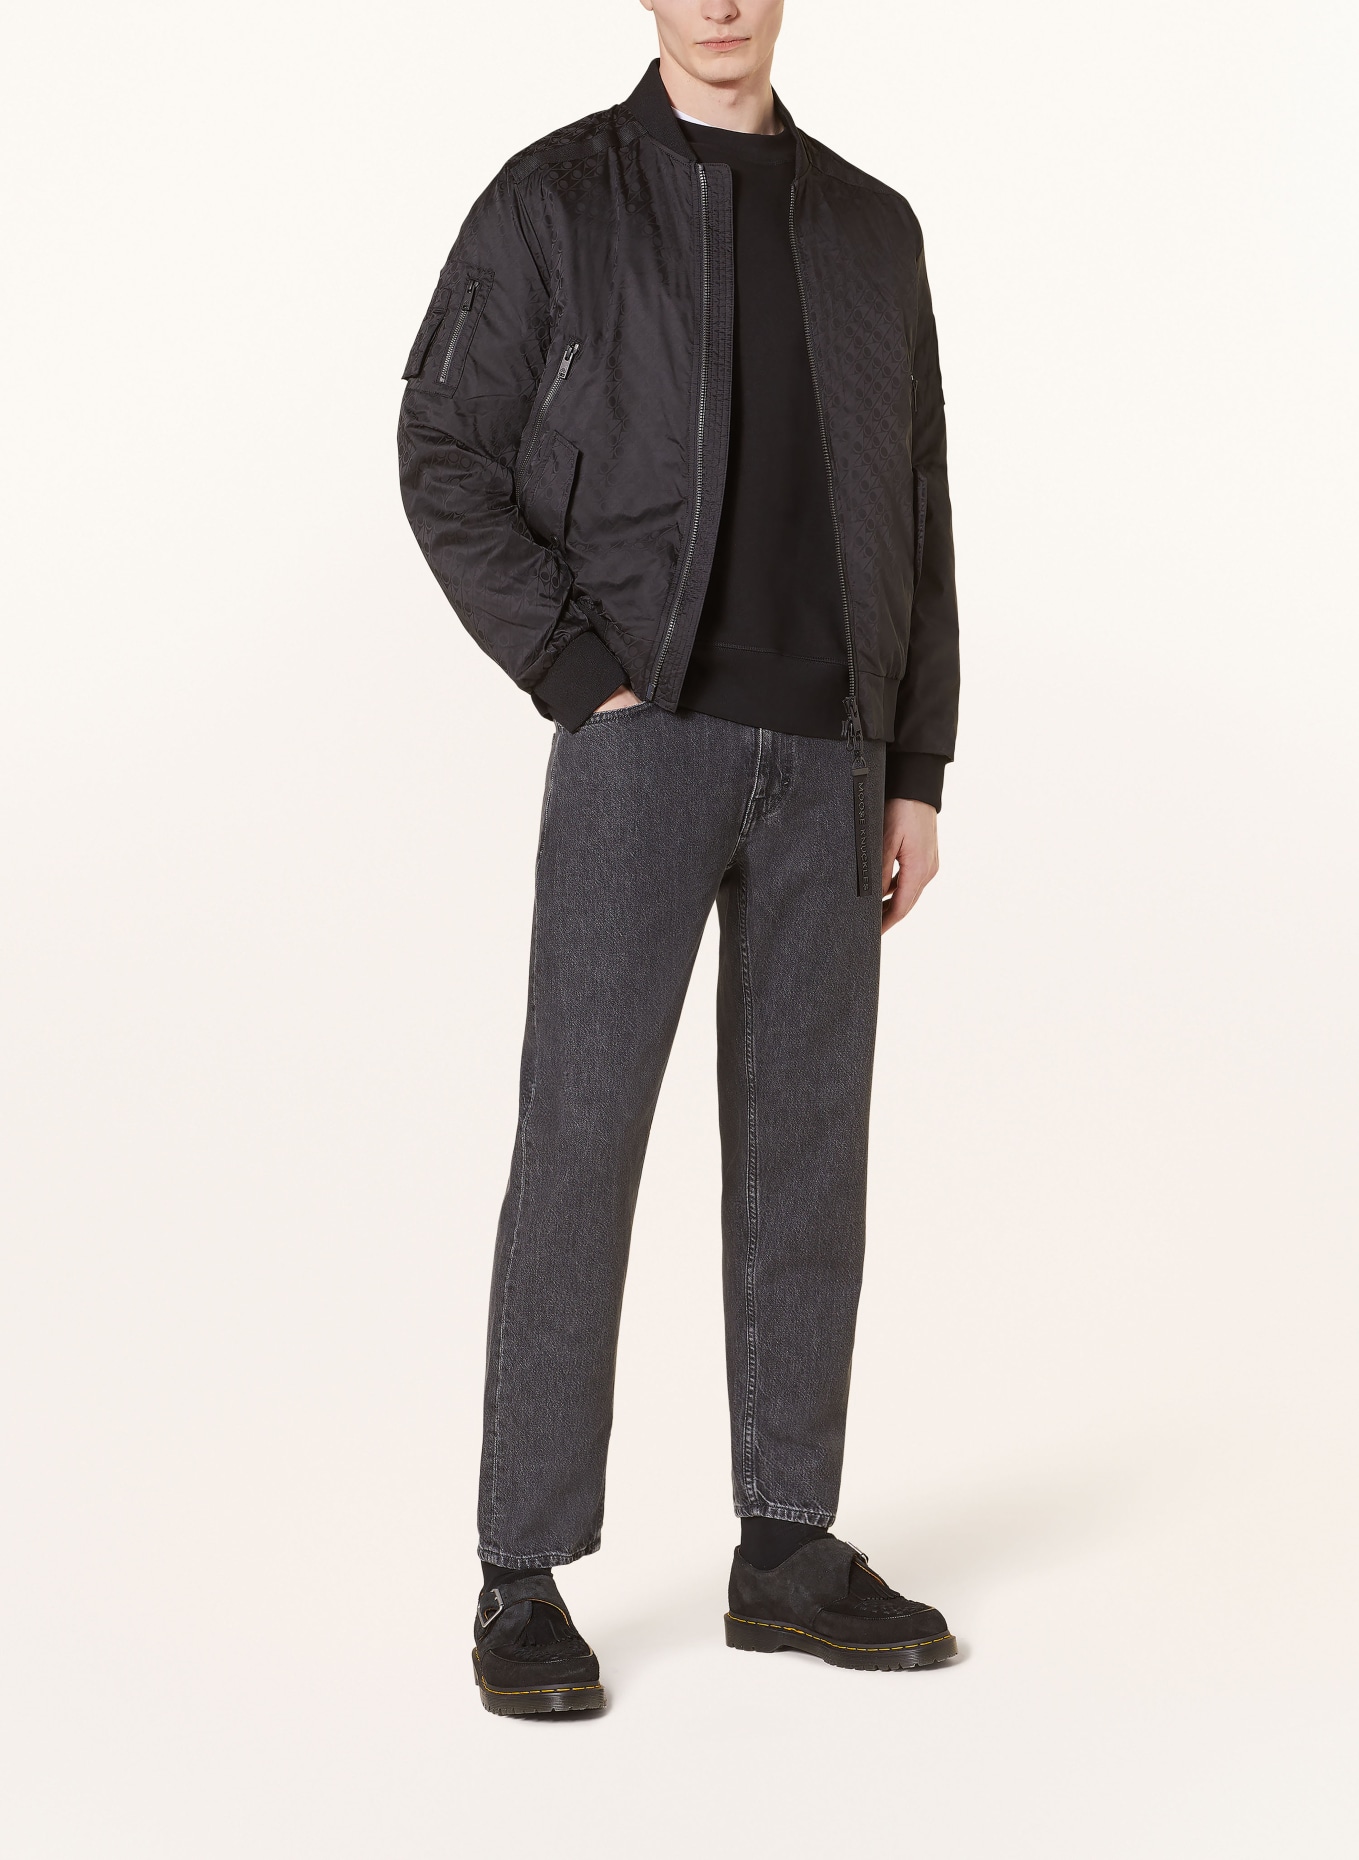 MOOSE KNUCKLES Bomber jacket COURVILLE, Color: BLACK (Image 2)